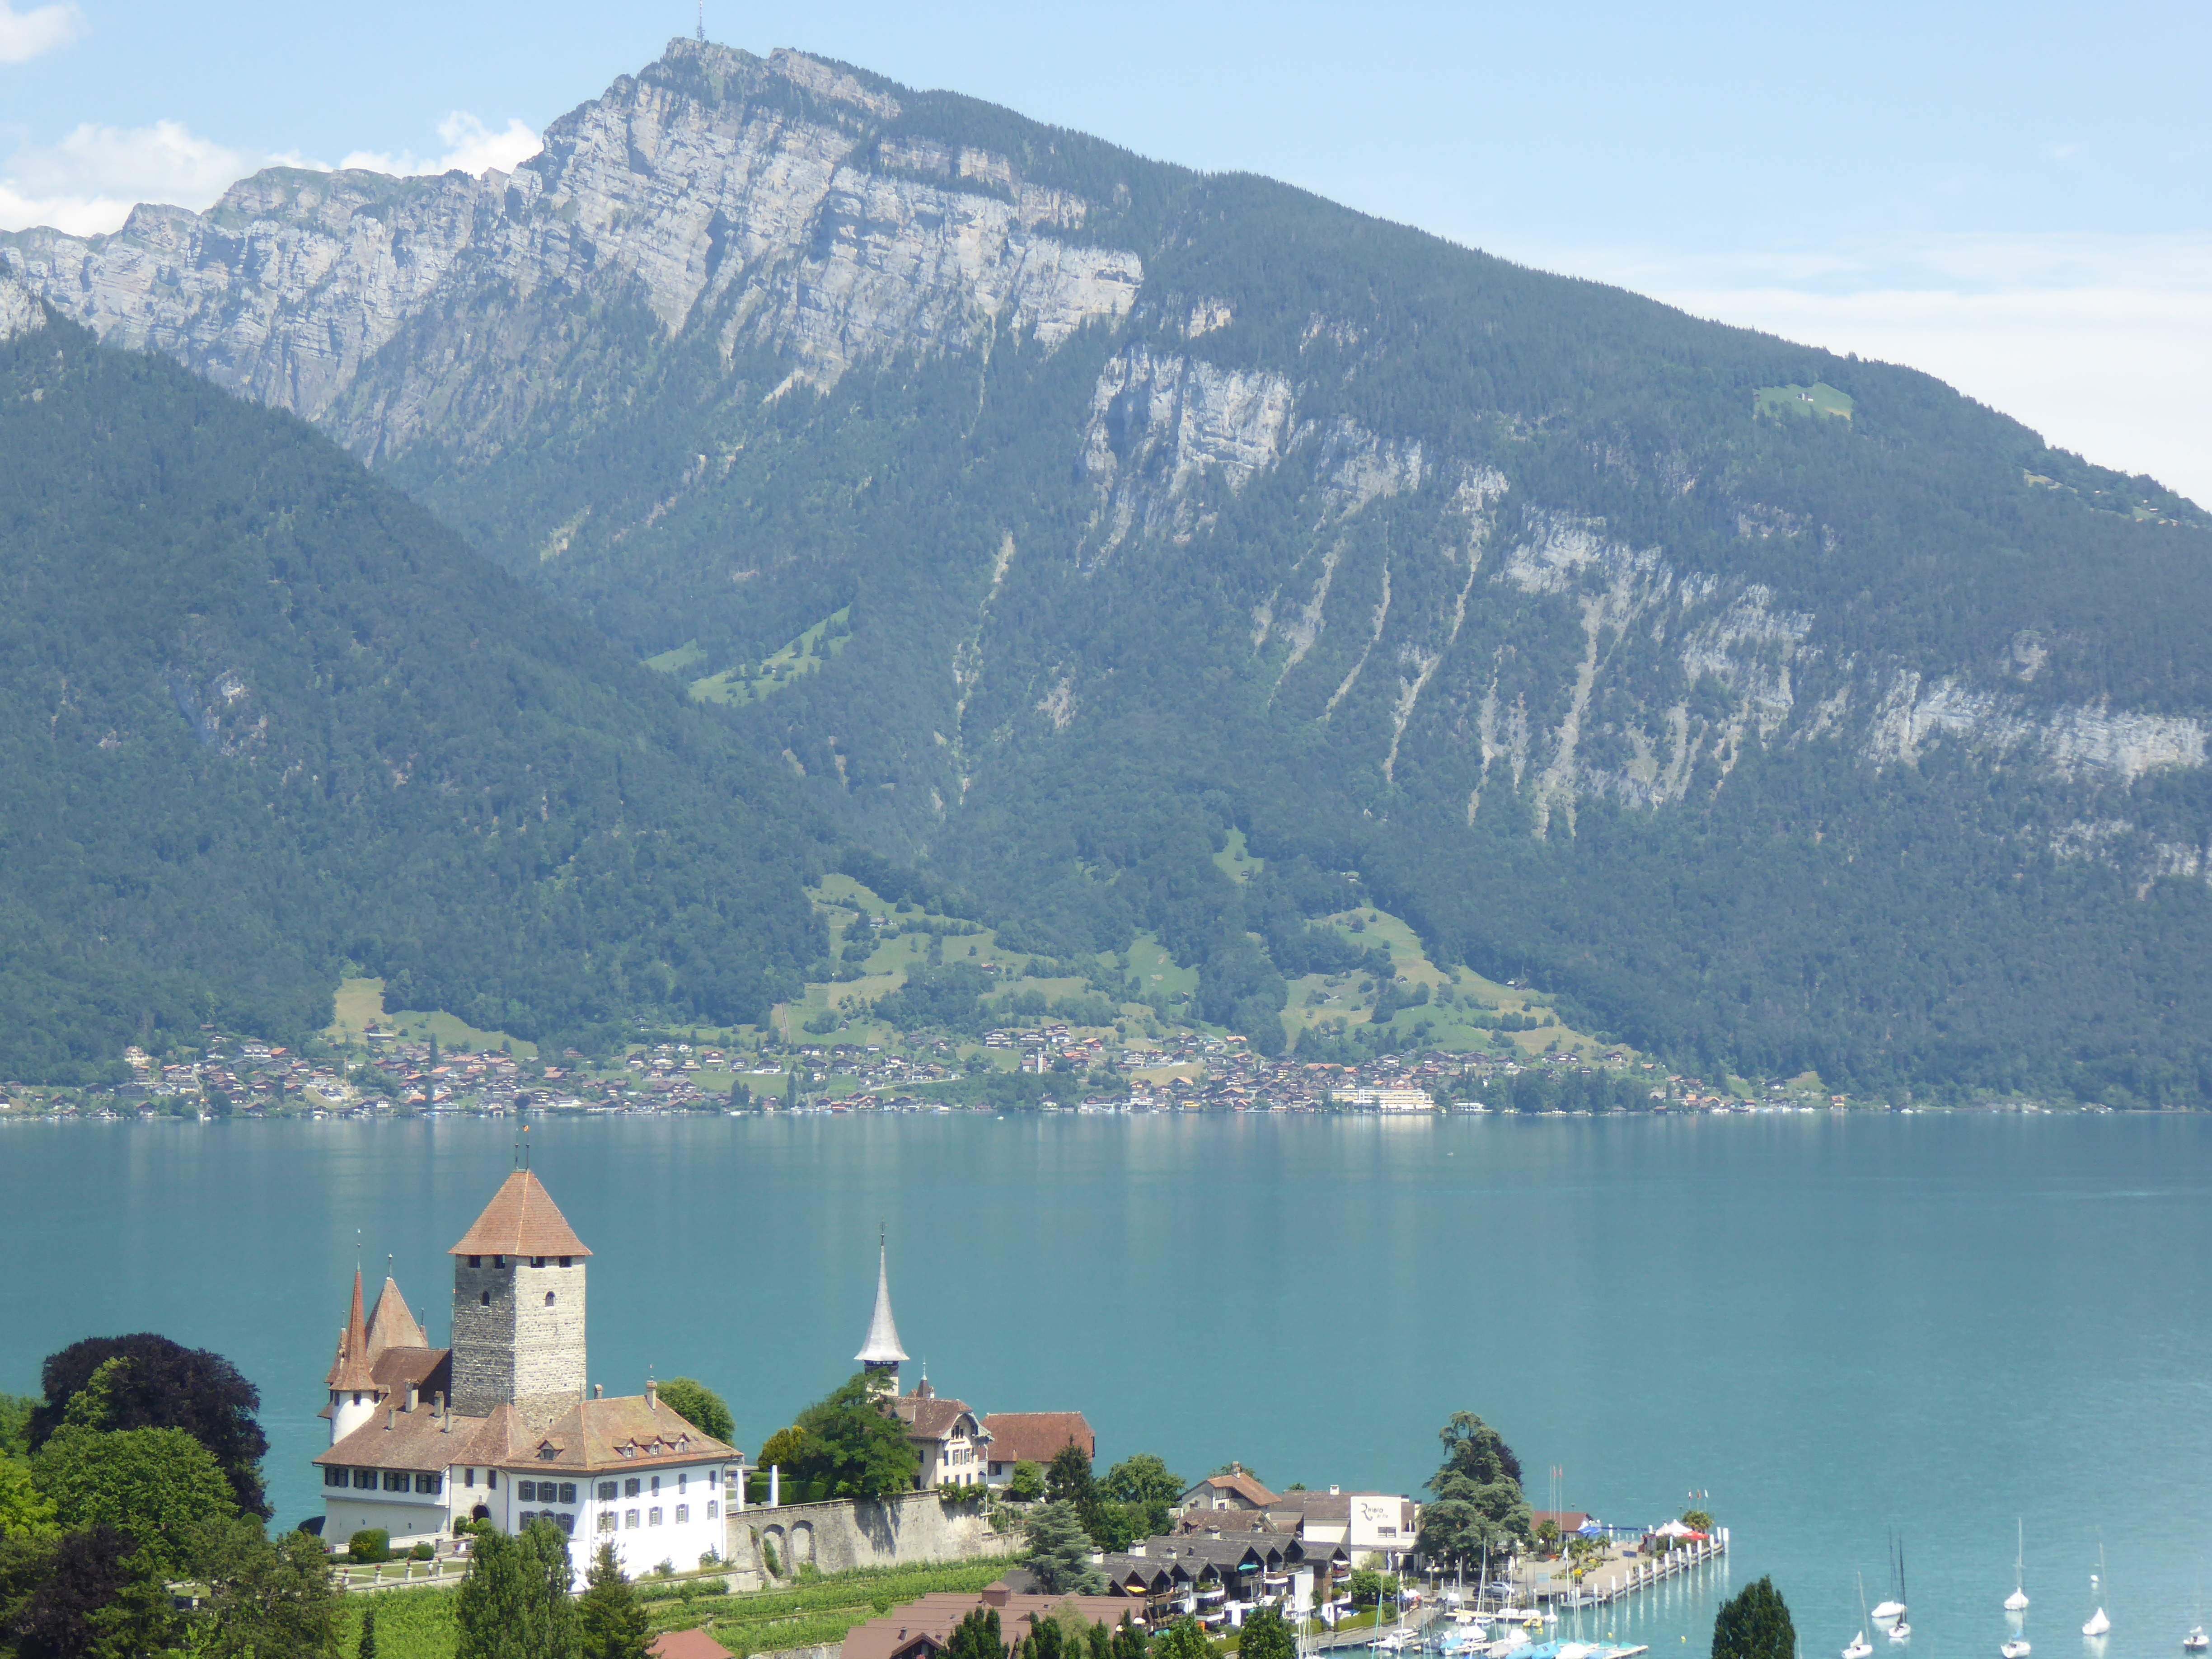 7/1 - 3-day bike trip: Lake Geneva to Lucerne